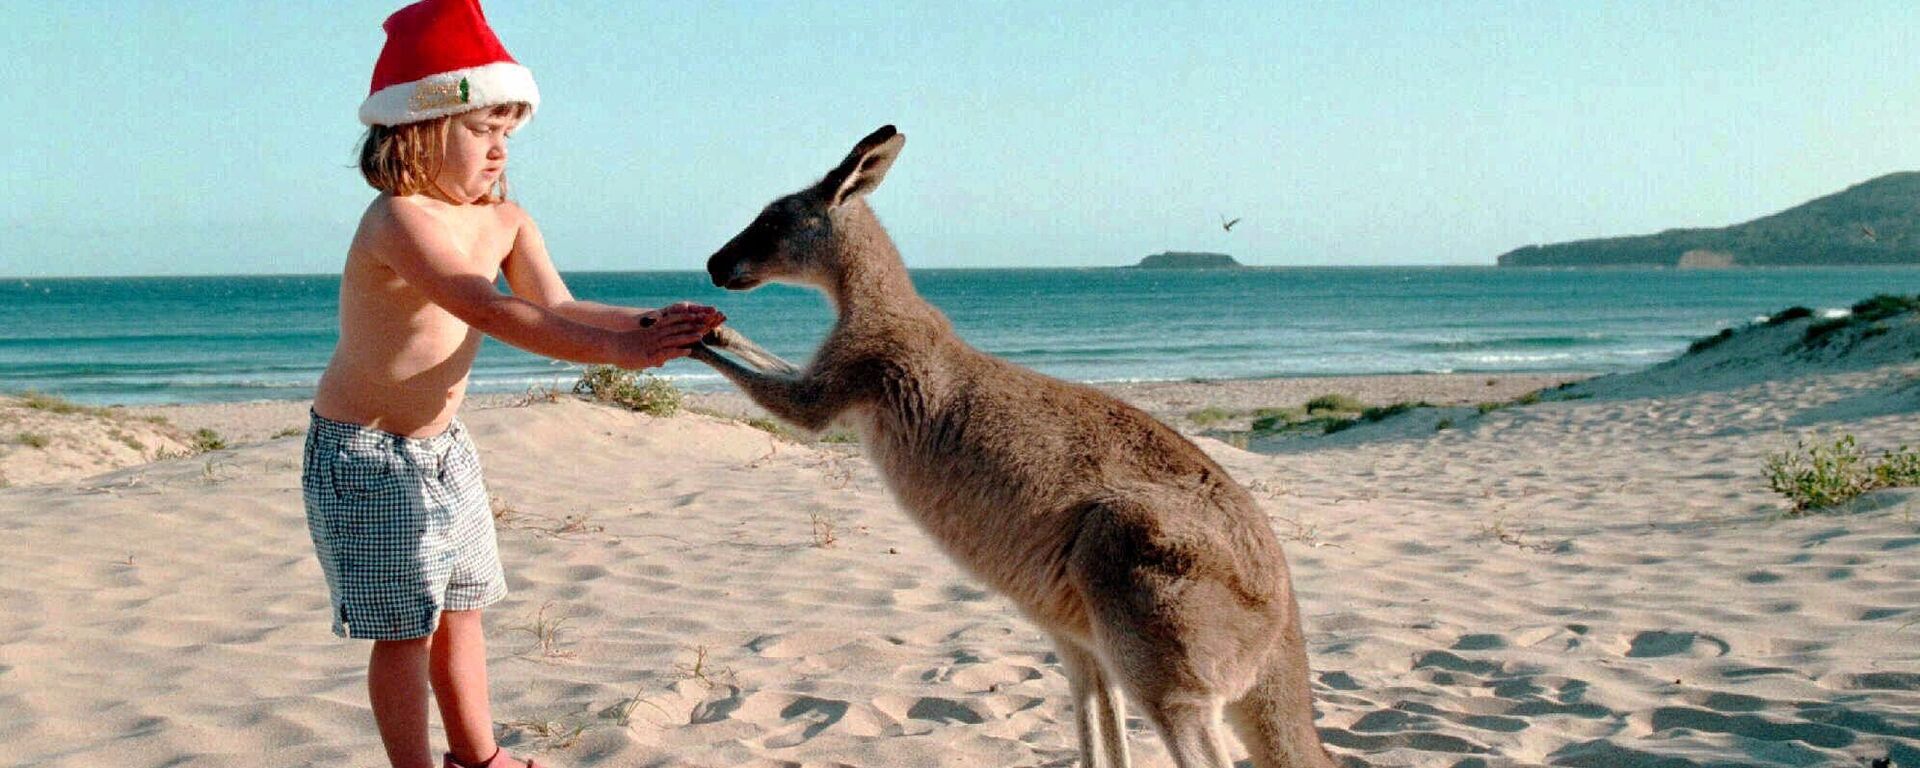 Девочка с кенгуру на пляже накануне Рождества в Австралии  - Sputnik Латвия, 1920, 03.12.2020